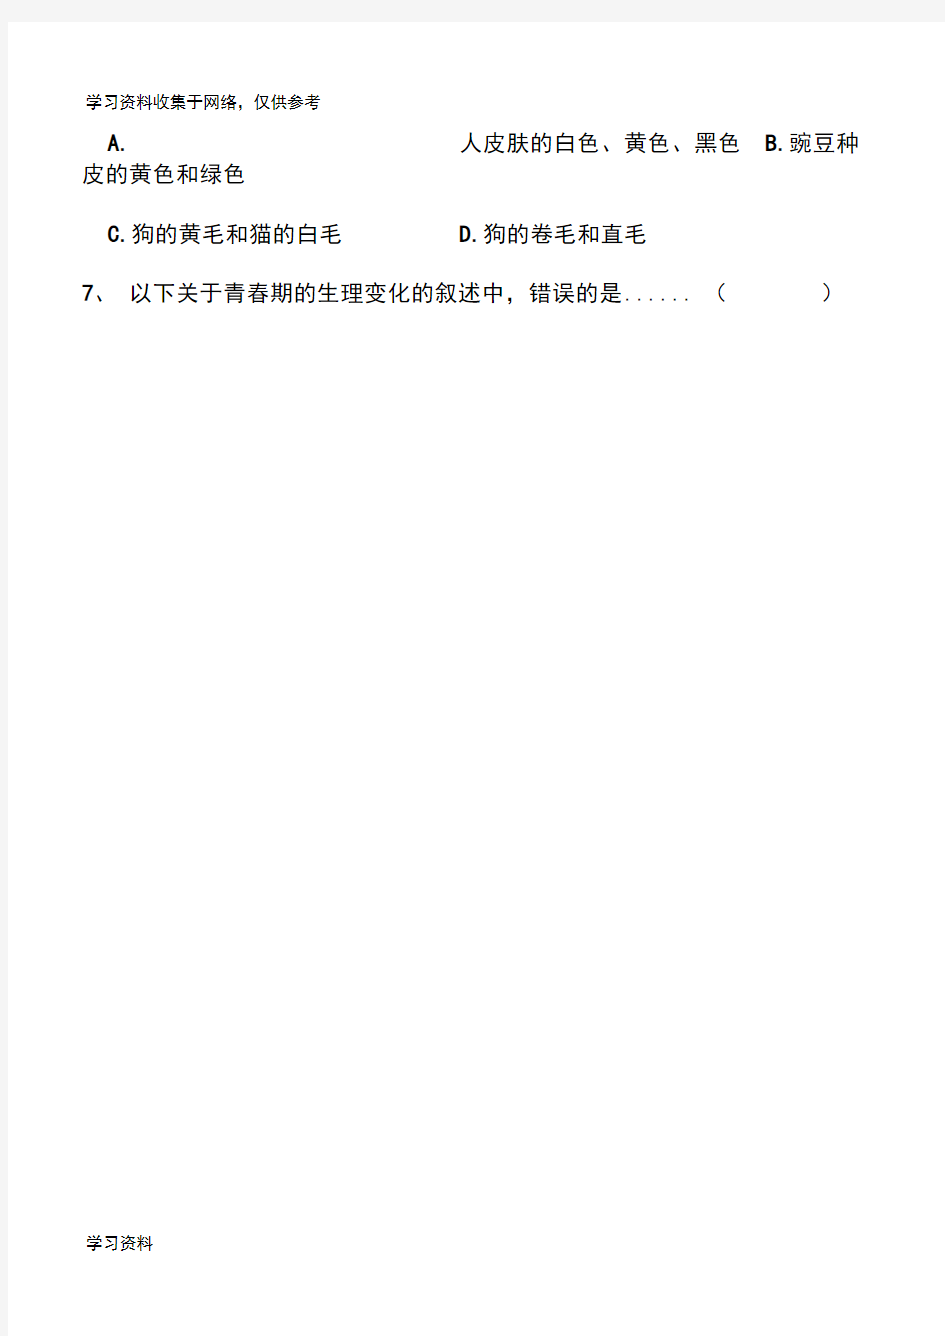 2014年上海初中学生学业考试生命科学试卷(自己整理,Word版,可直接打印)